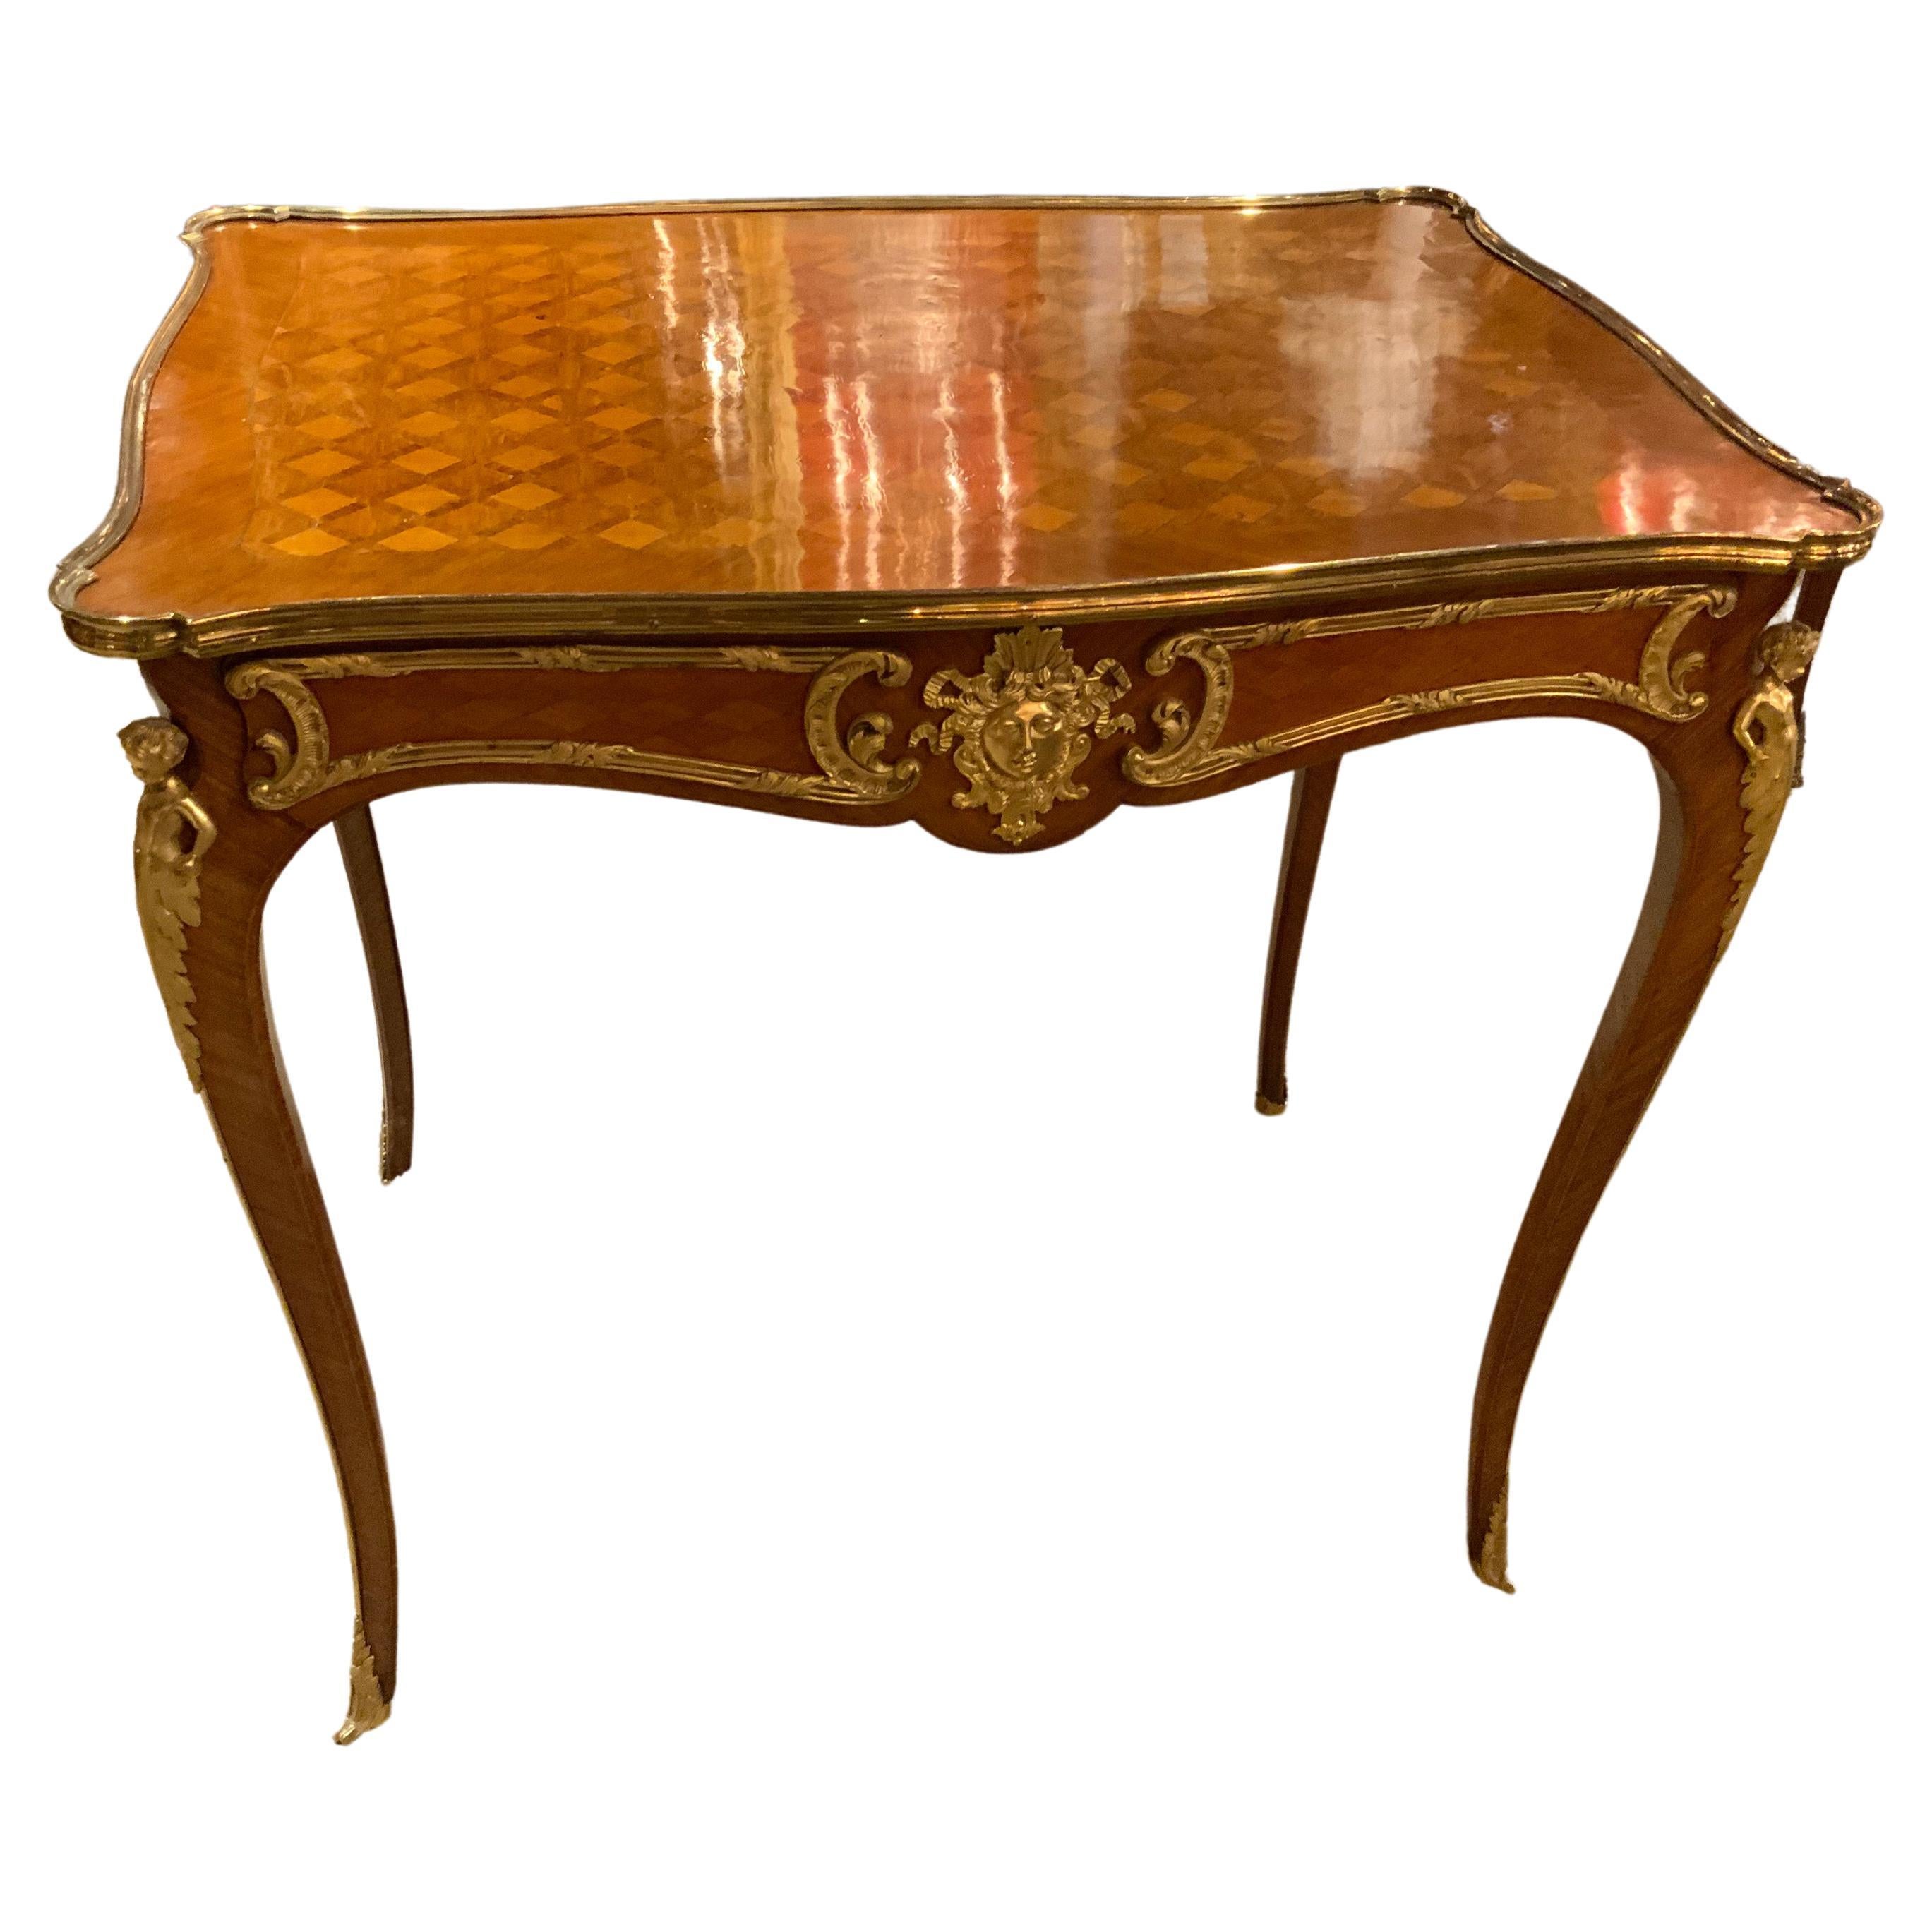 Fina mesa auxiliar francesa de marquetería con monturas de bronce dorado, estilo Luis XVI